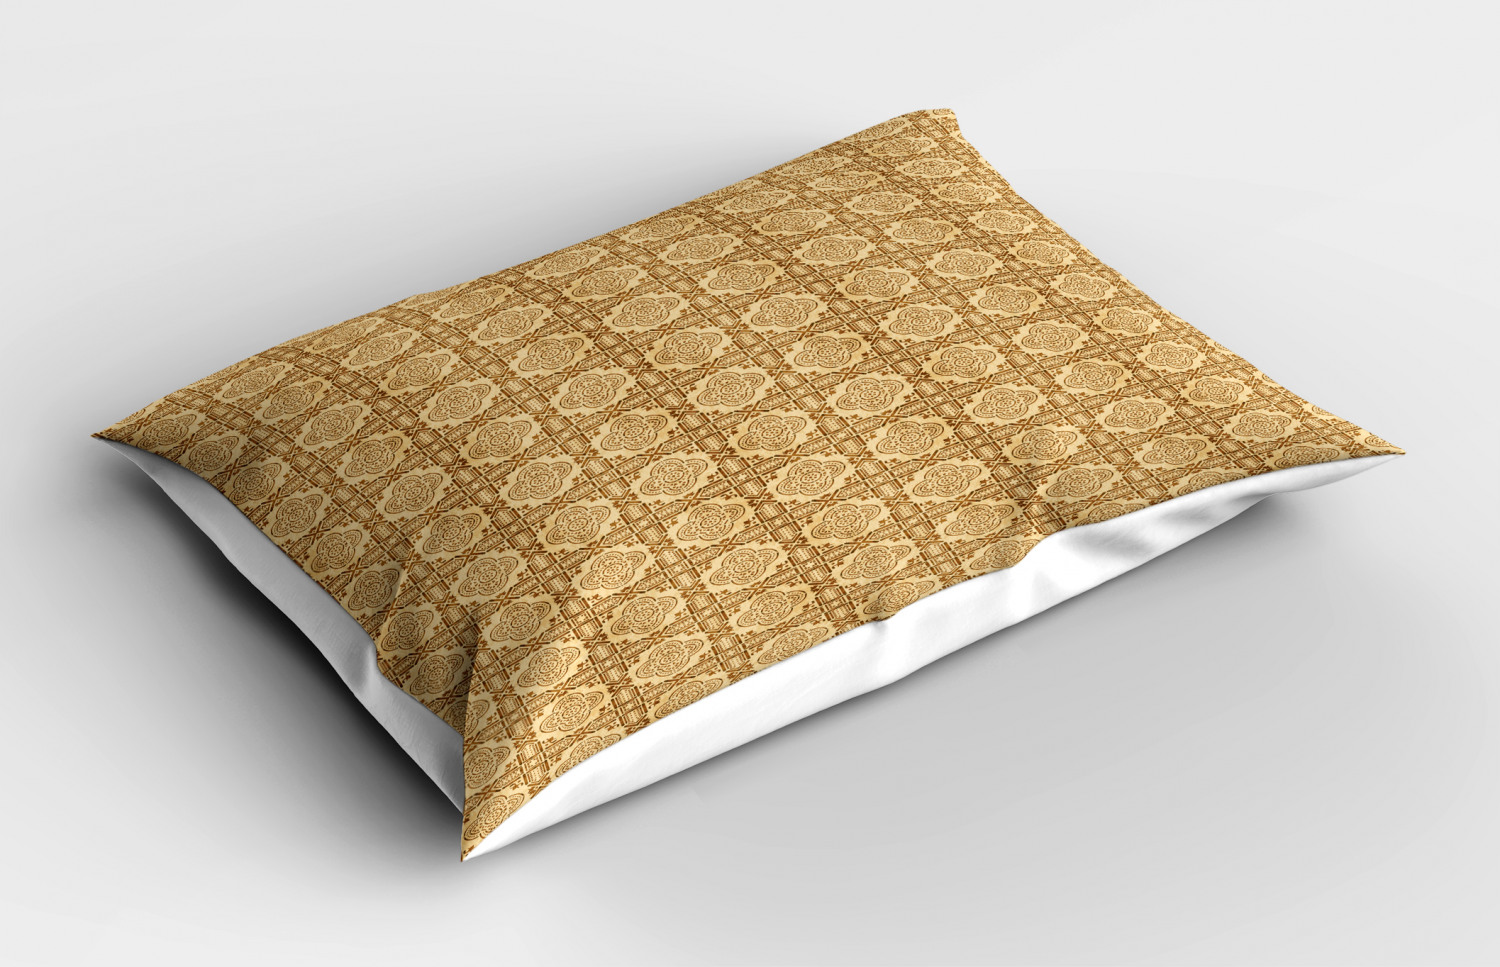 Details about   Oriental Art Pillow Sham Decorative Pillowcase 3 Sizes Bedroom Decoration 